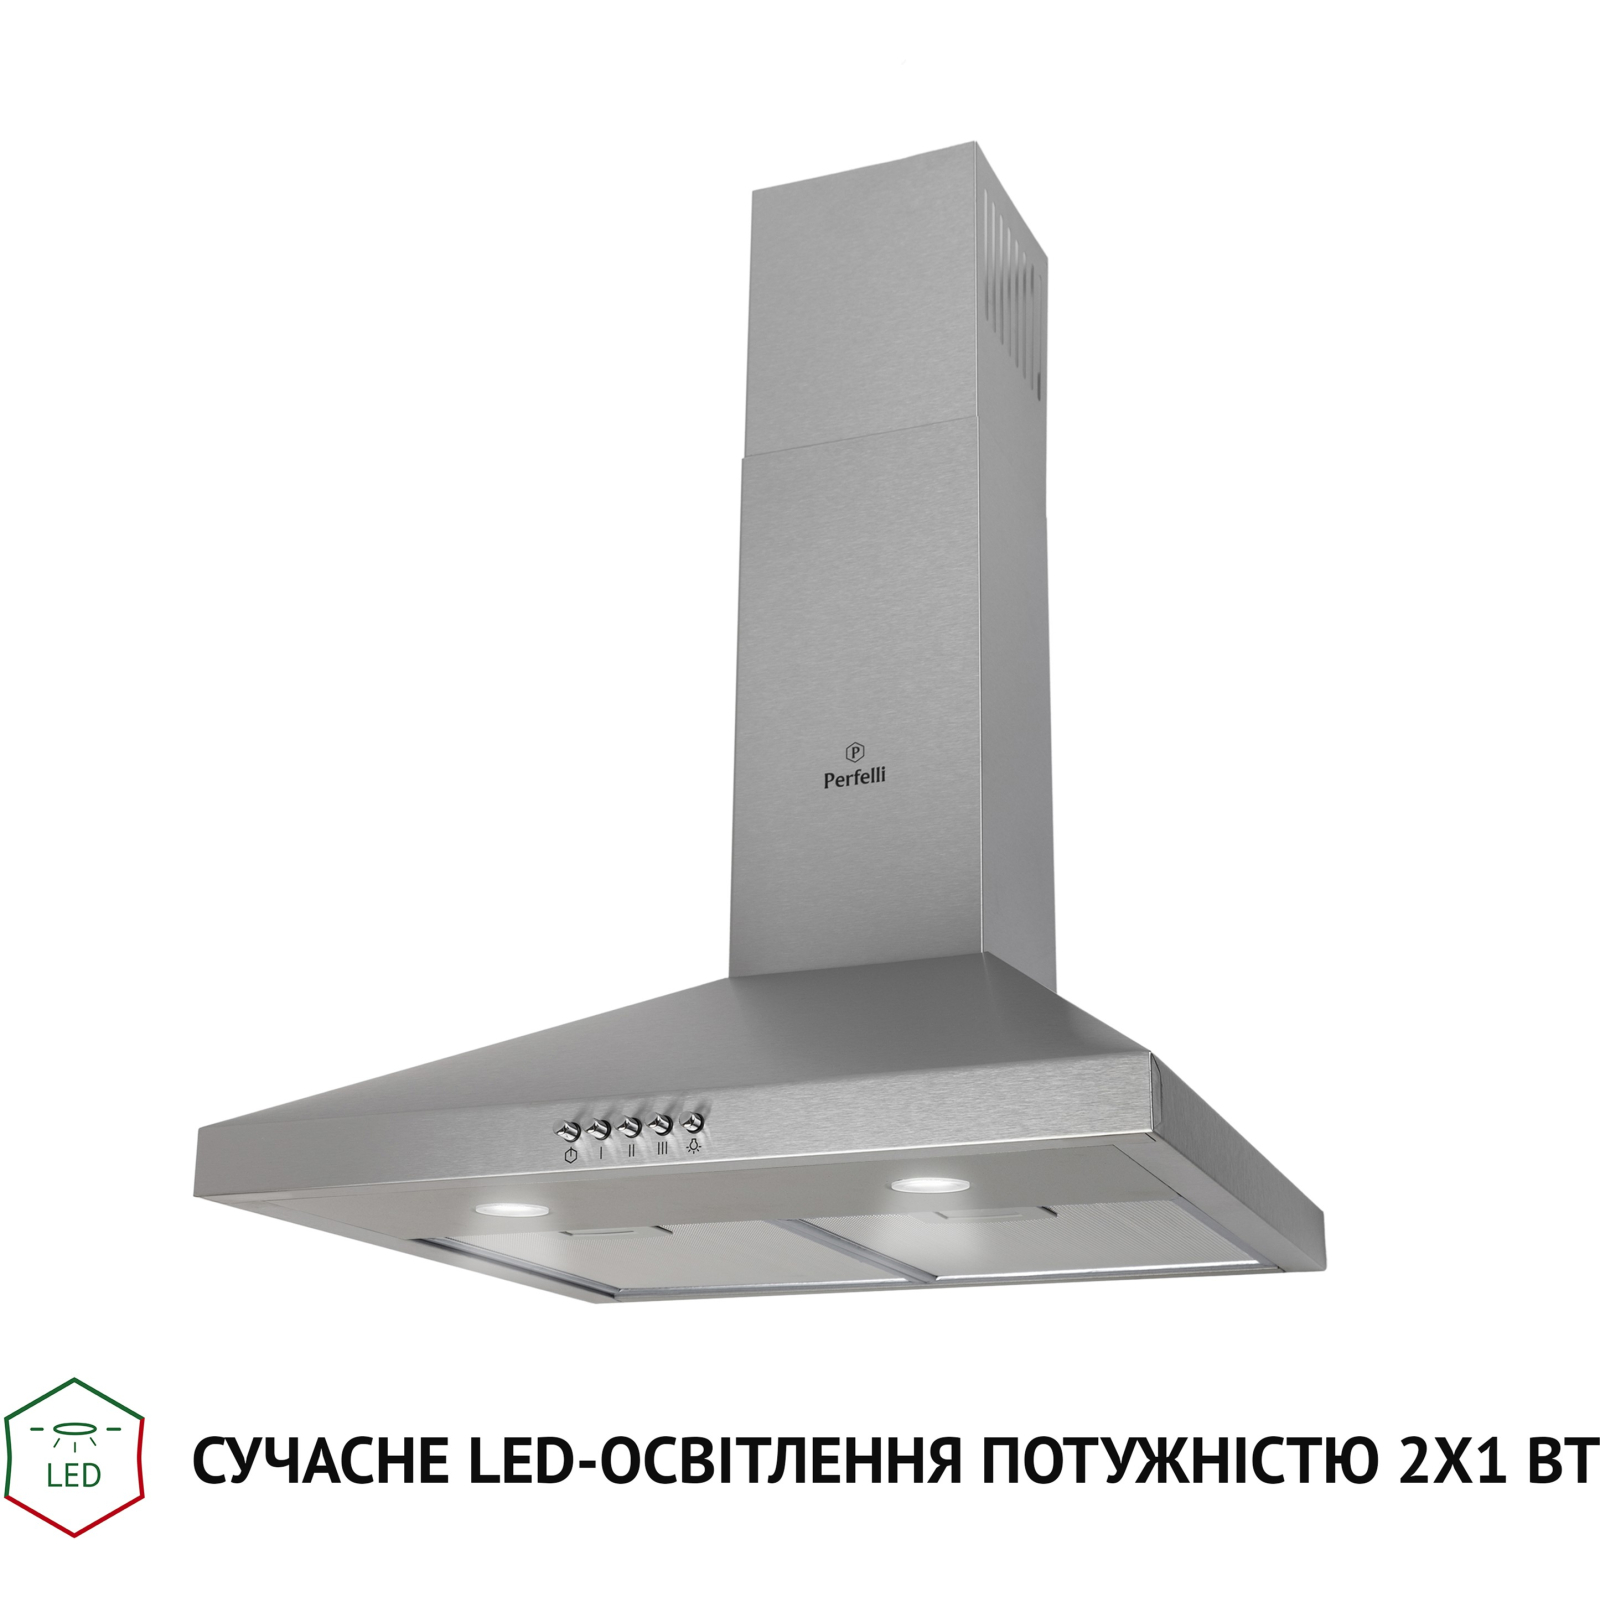 Вытяжка кухонная Perfelli K 5202 IV 700 LED изображение 3